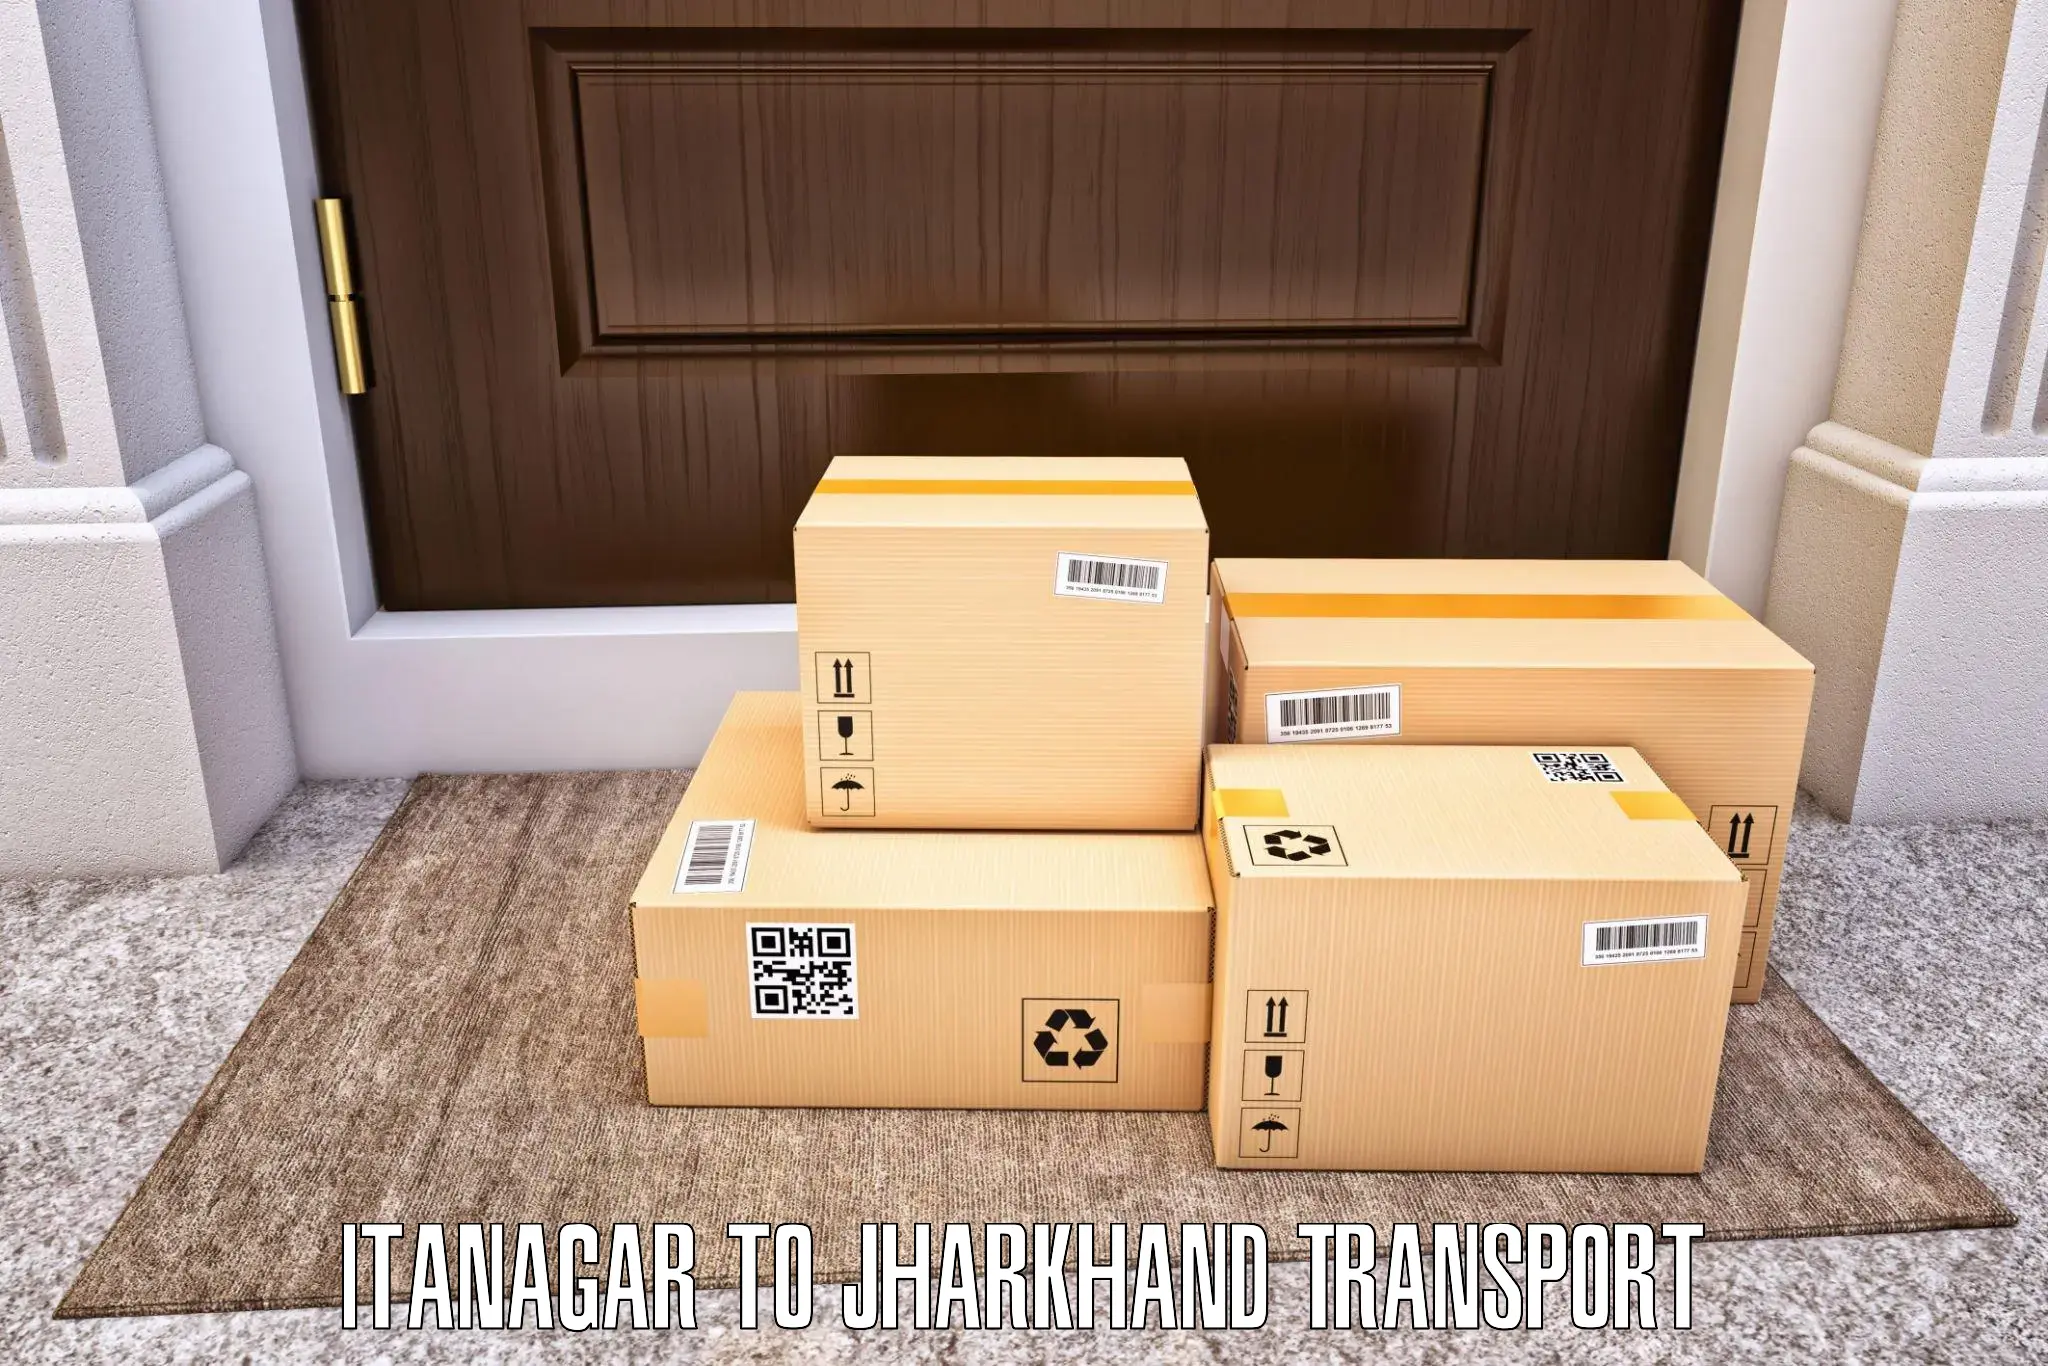 International cargo transportation services Itanagar to Ranchi